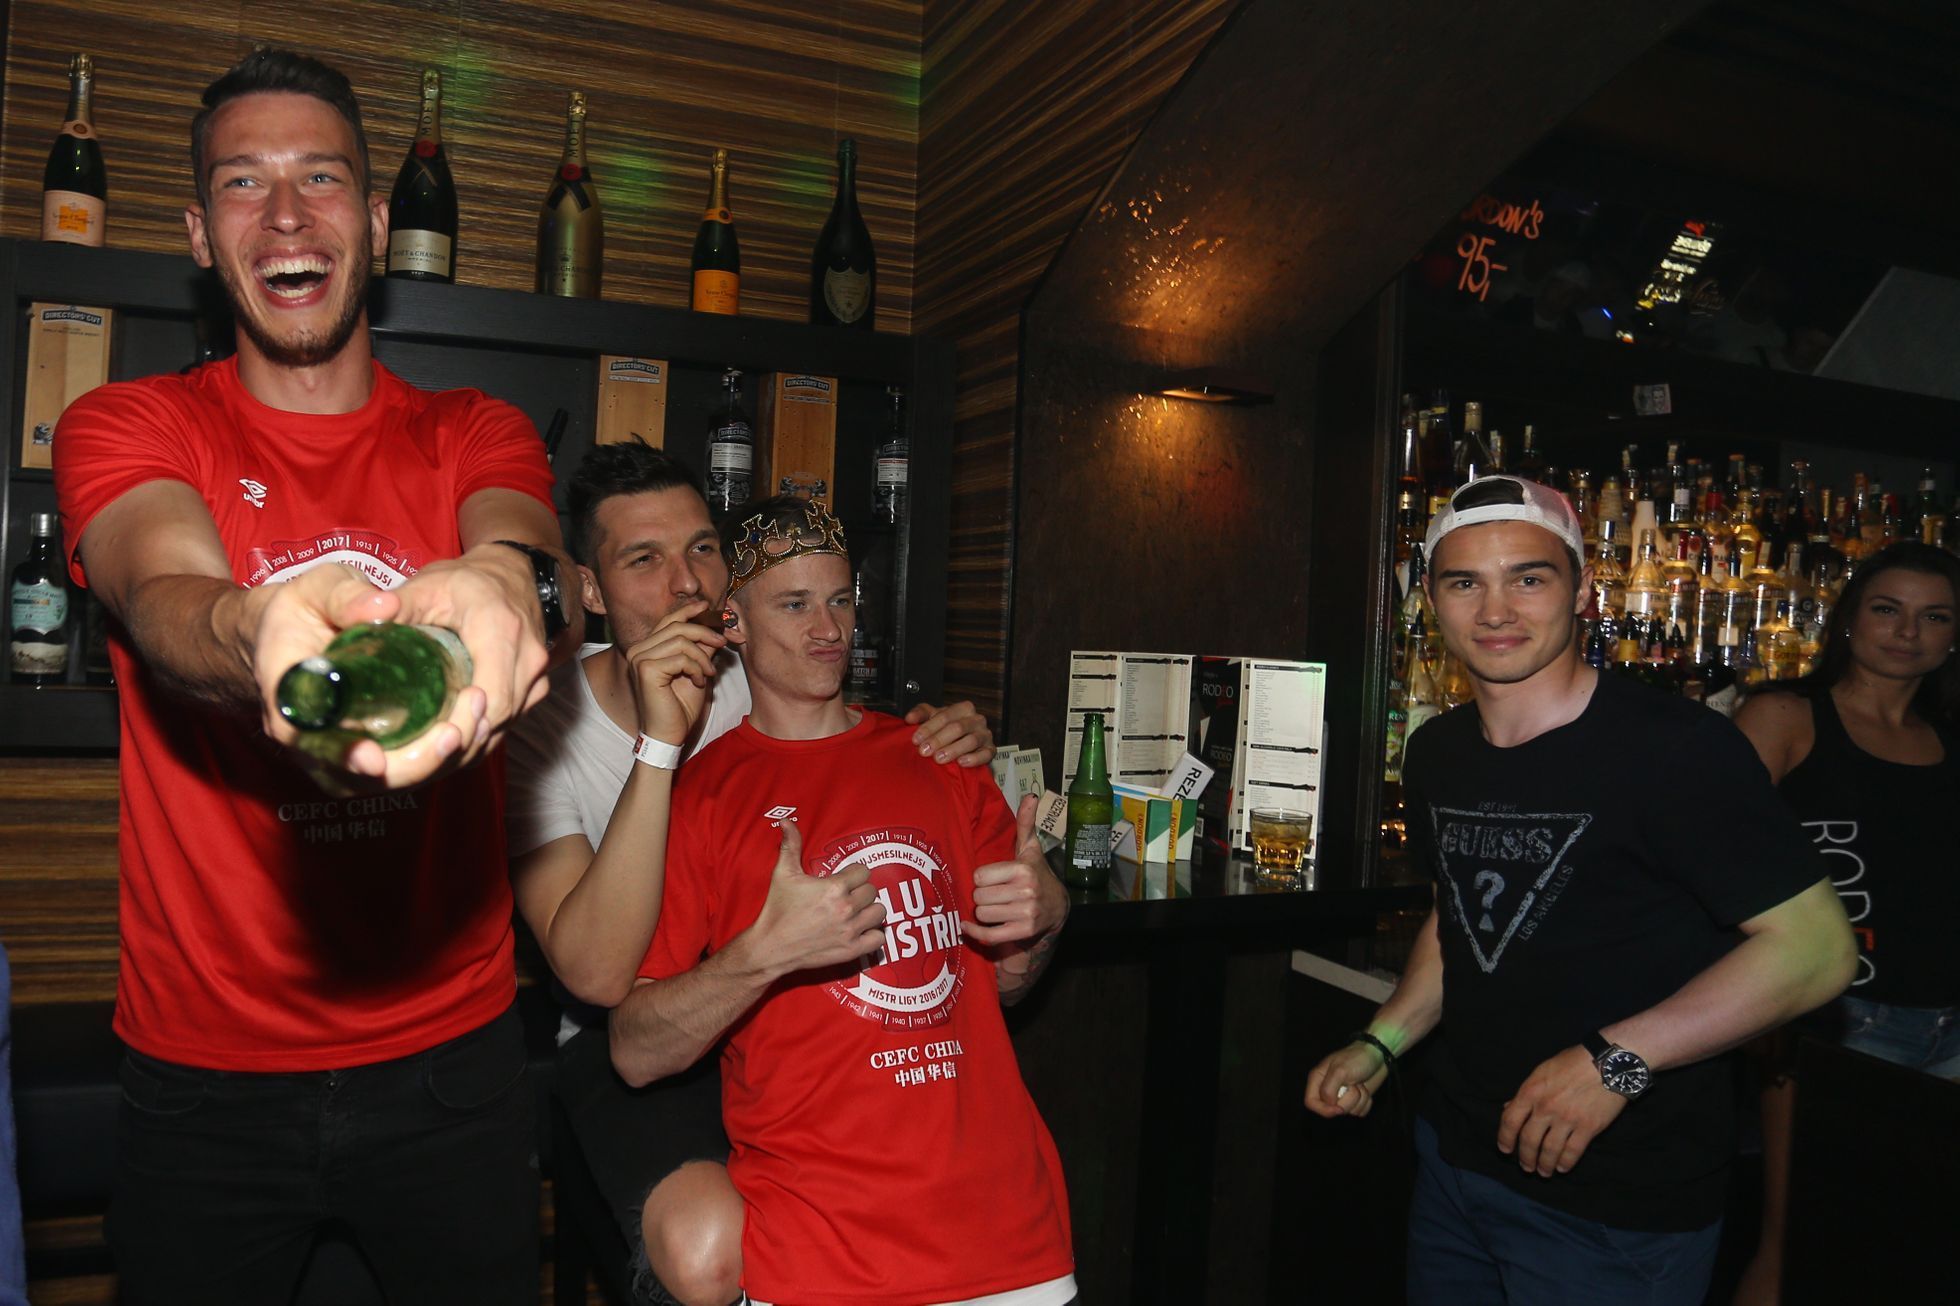 Slavia: oslavy mistrovského titulu v hospodě